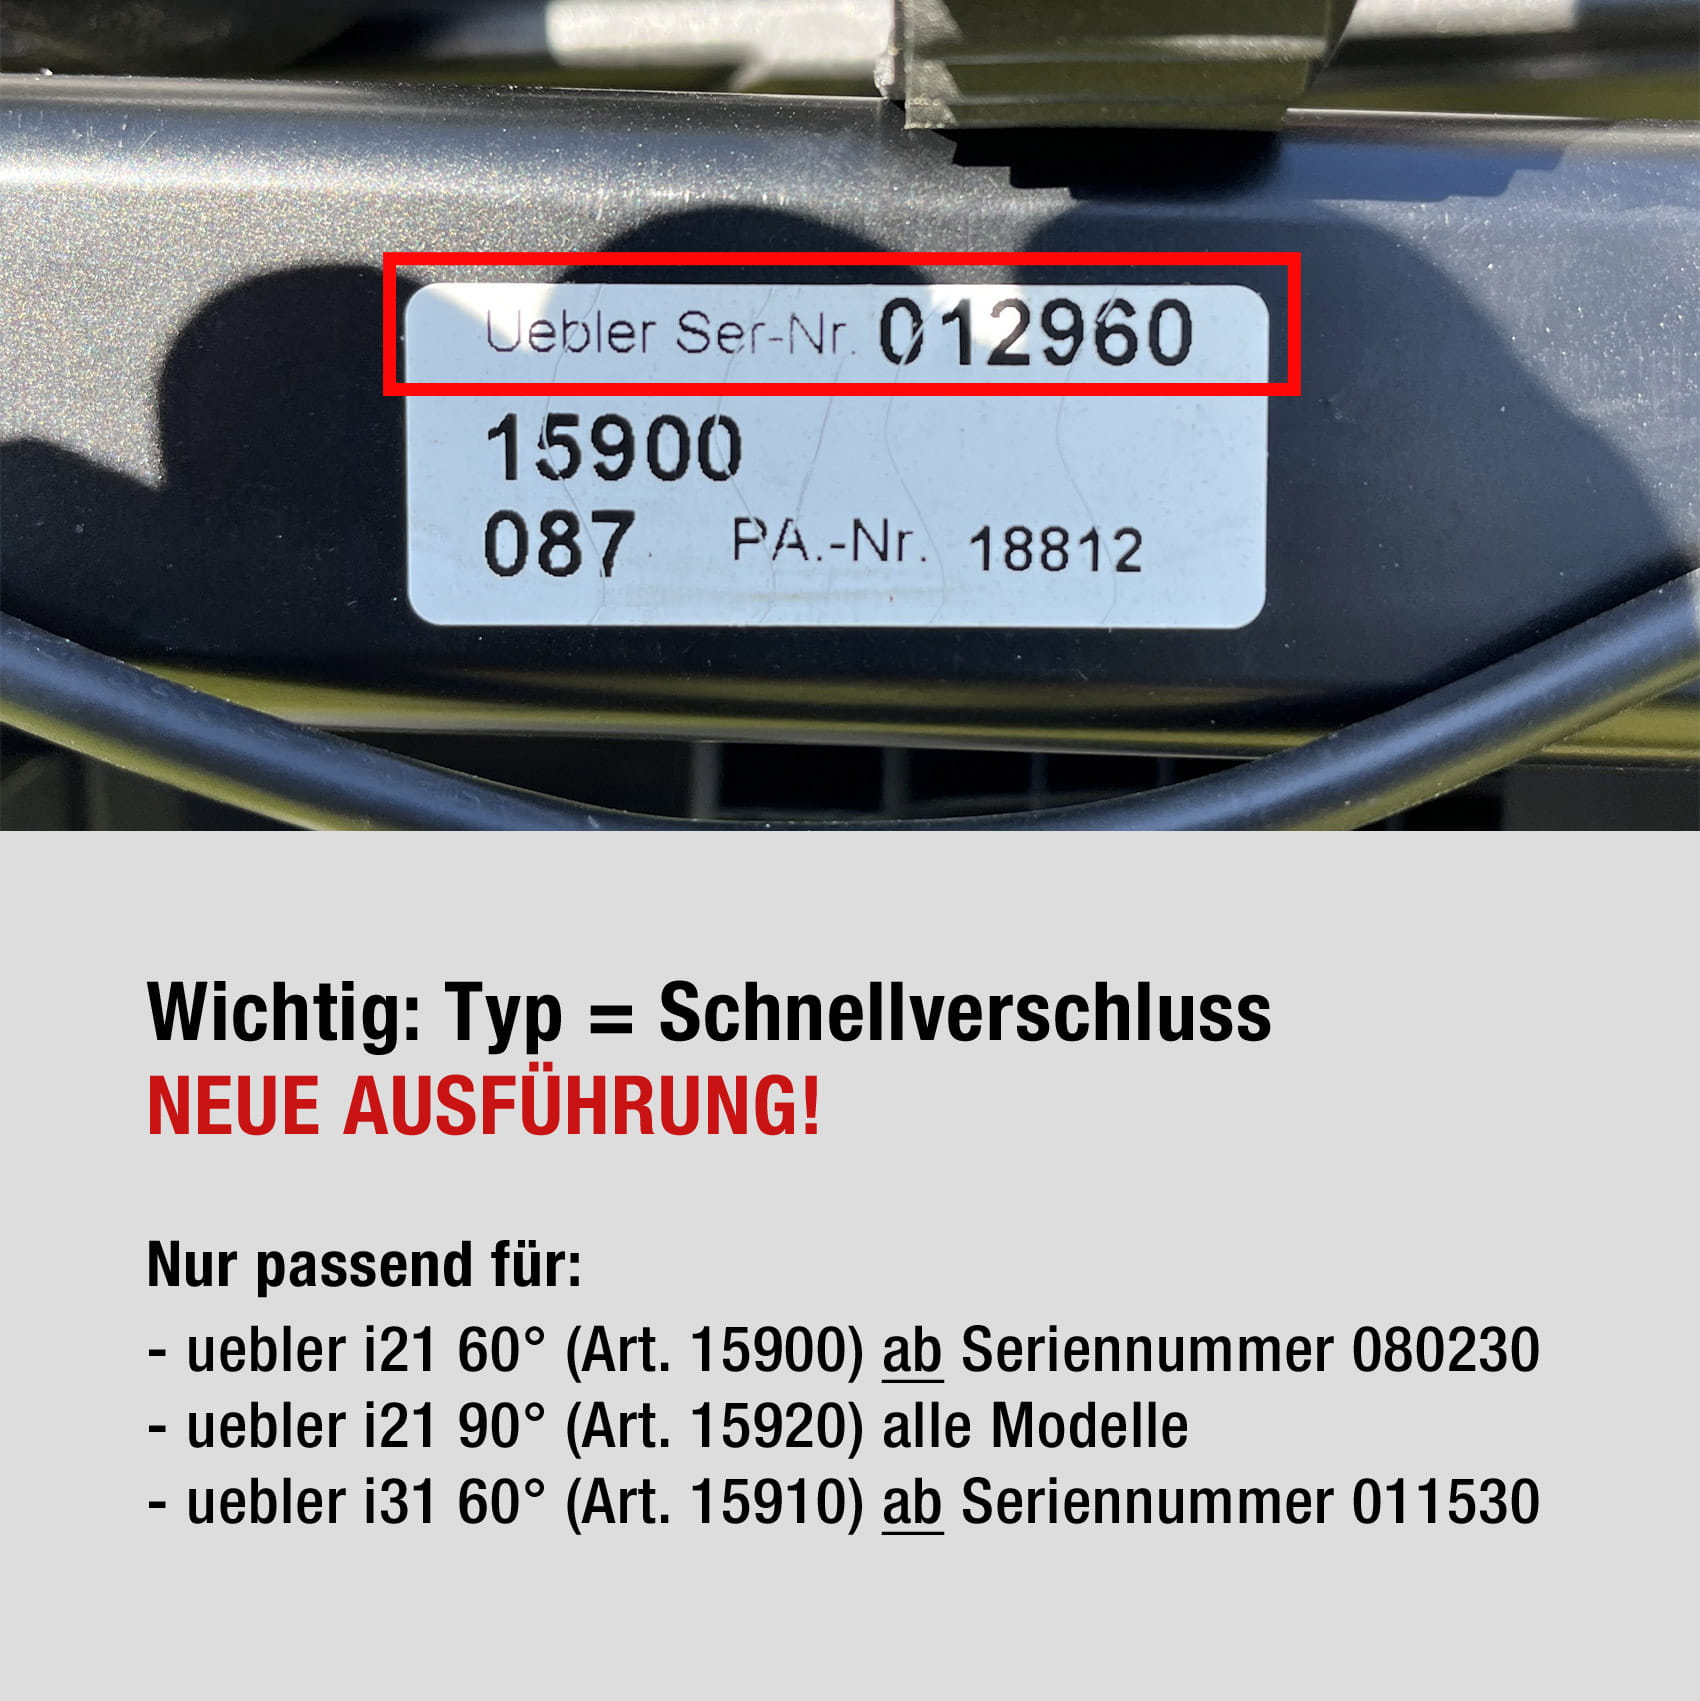 Uebler Zahnriemen 460 mm for Fatbikes (4 Stück, Schnellverschluss) 25010